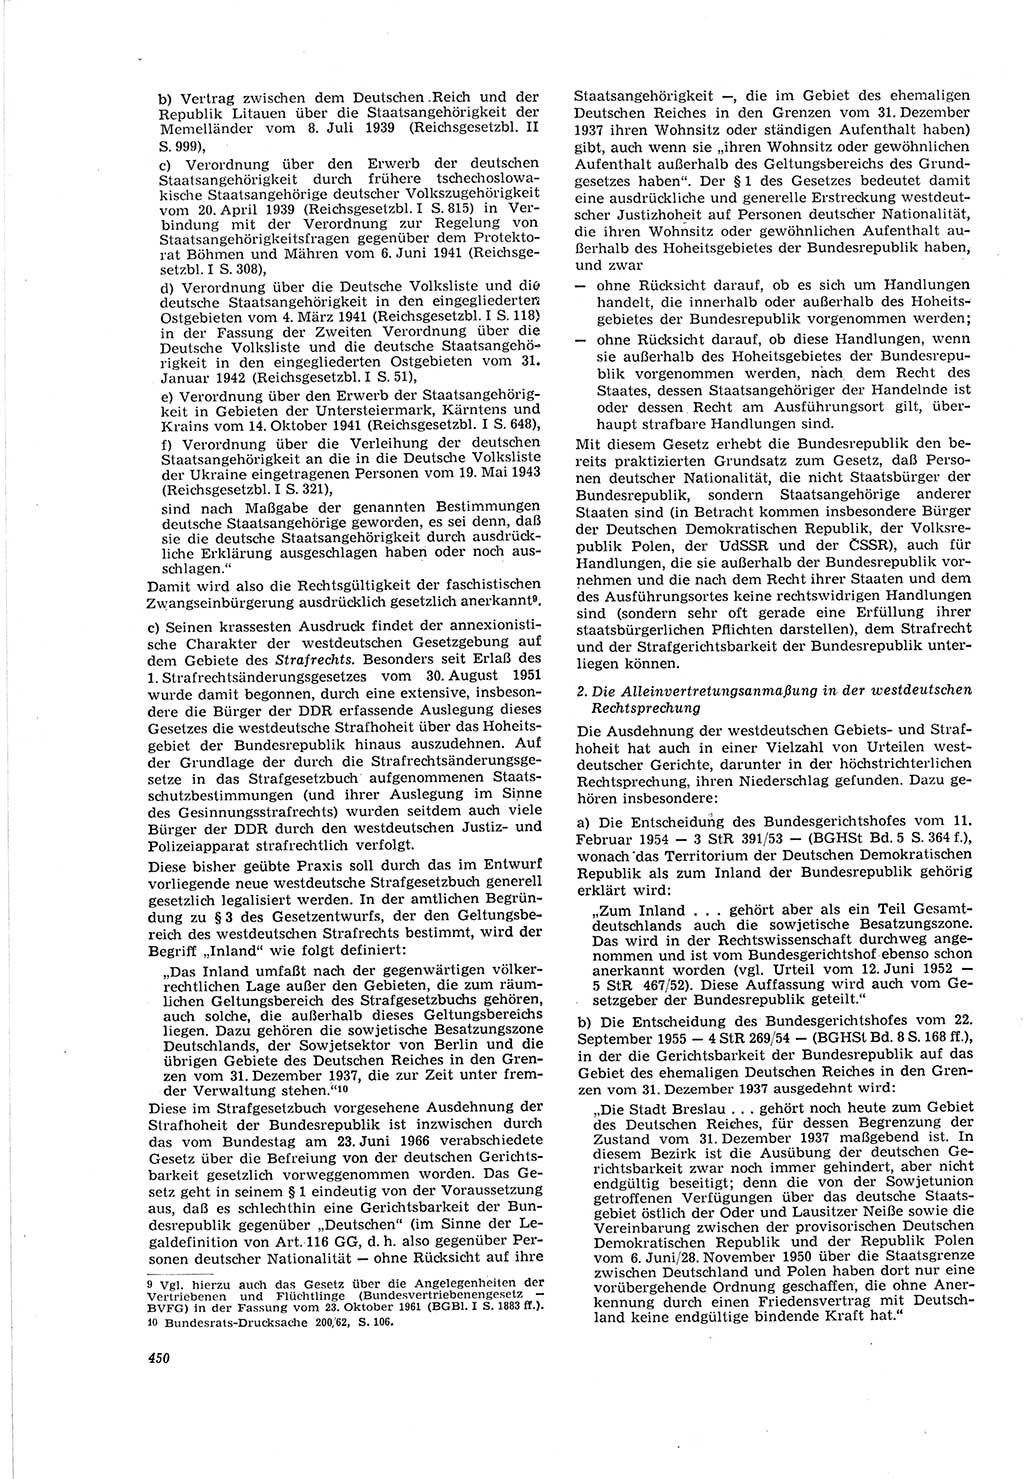 Neue Justiz (NJ), Zeitschrift für Recht und Rechtswissenschaft [Deutsche Demokratische Republik (DDR)], 20. Jahrgang 1966, Seite 450 (NJ DDR 1966, S. 450)